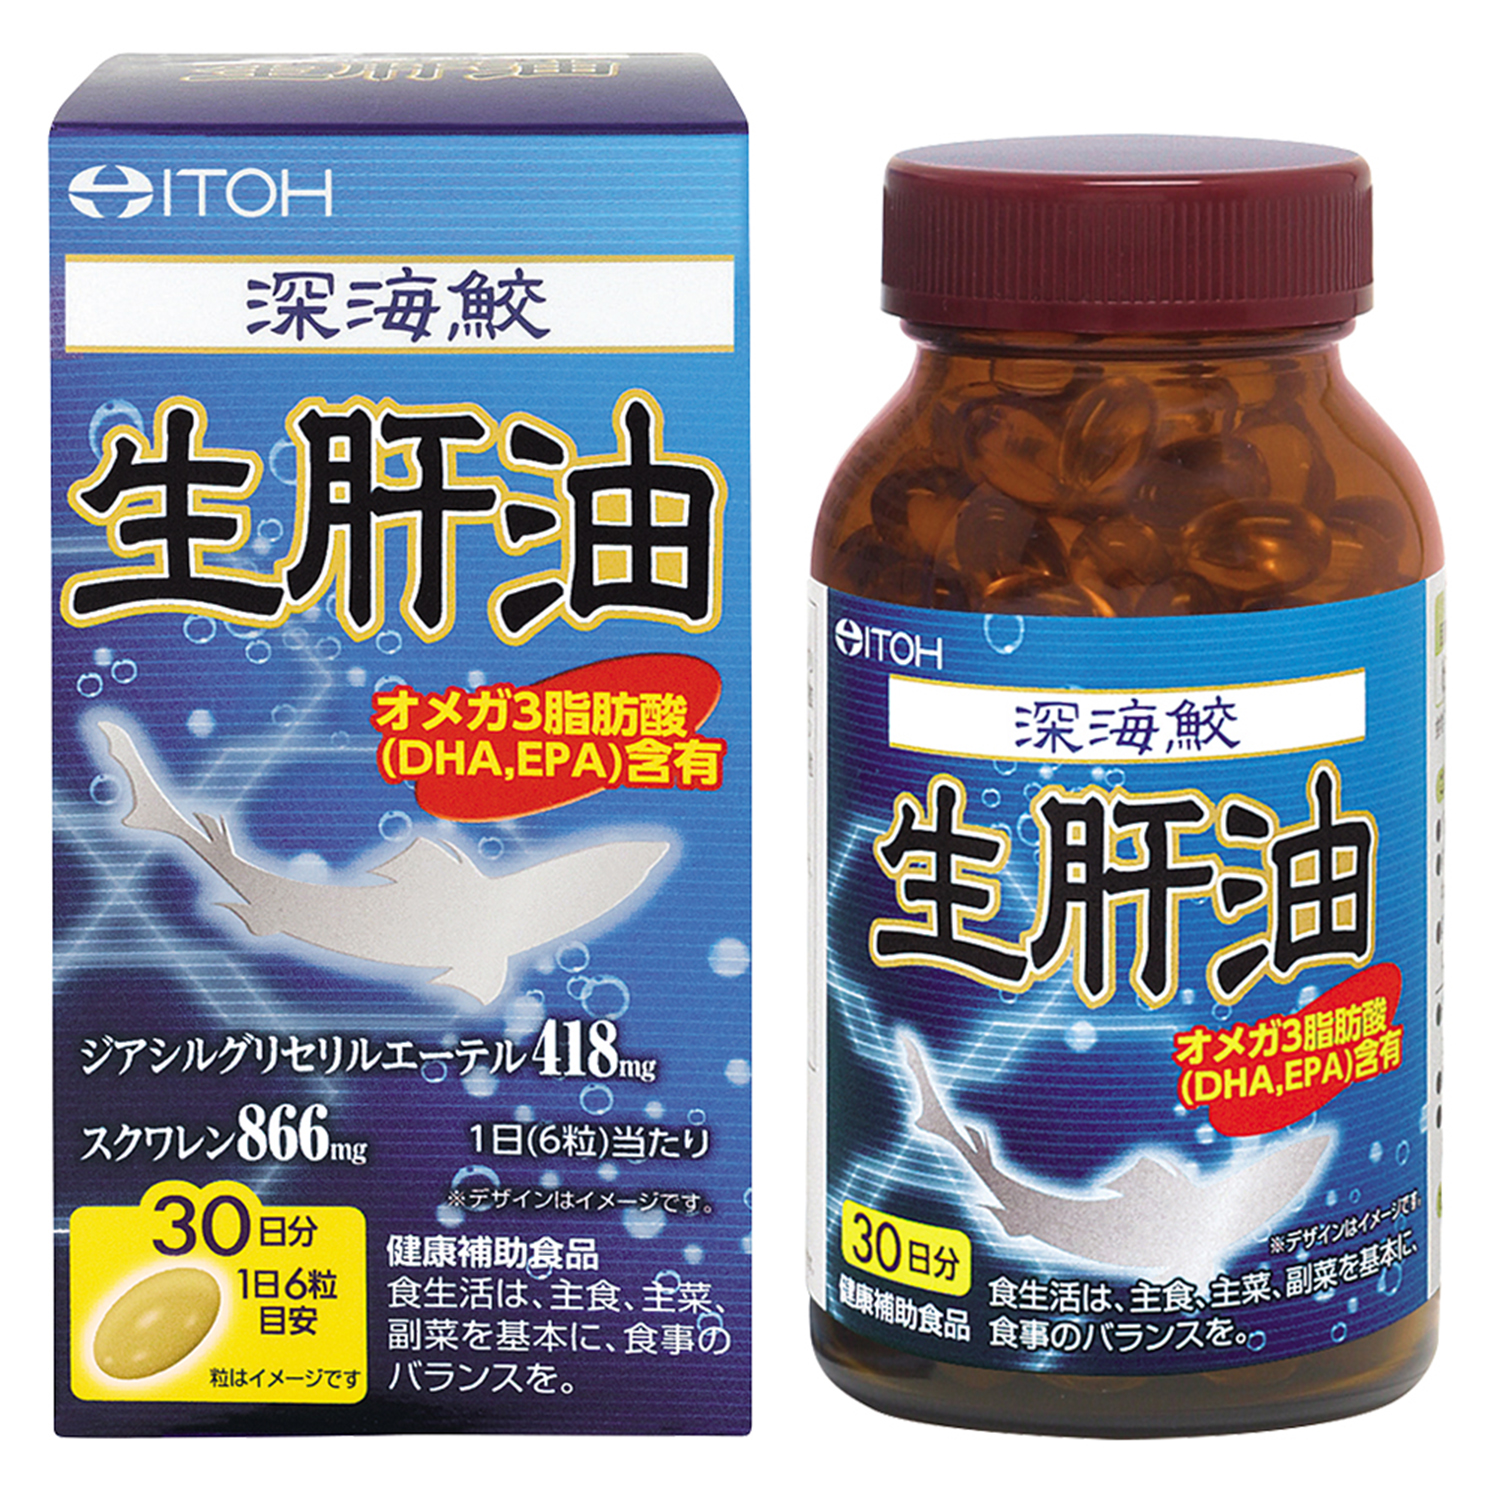 深海鮫エキス | 健康食品のことなら井藤漢方製薬